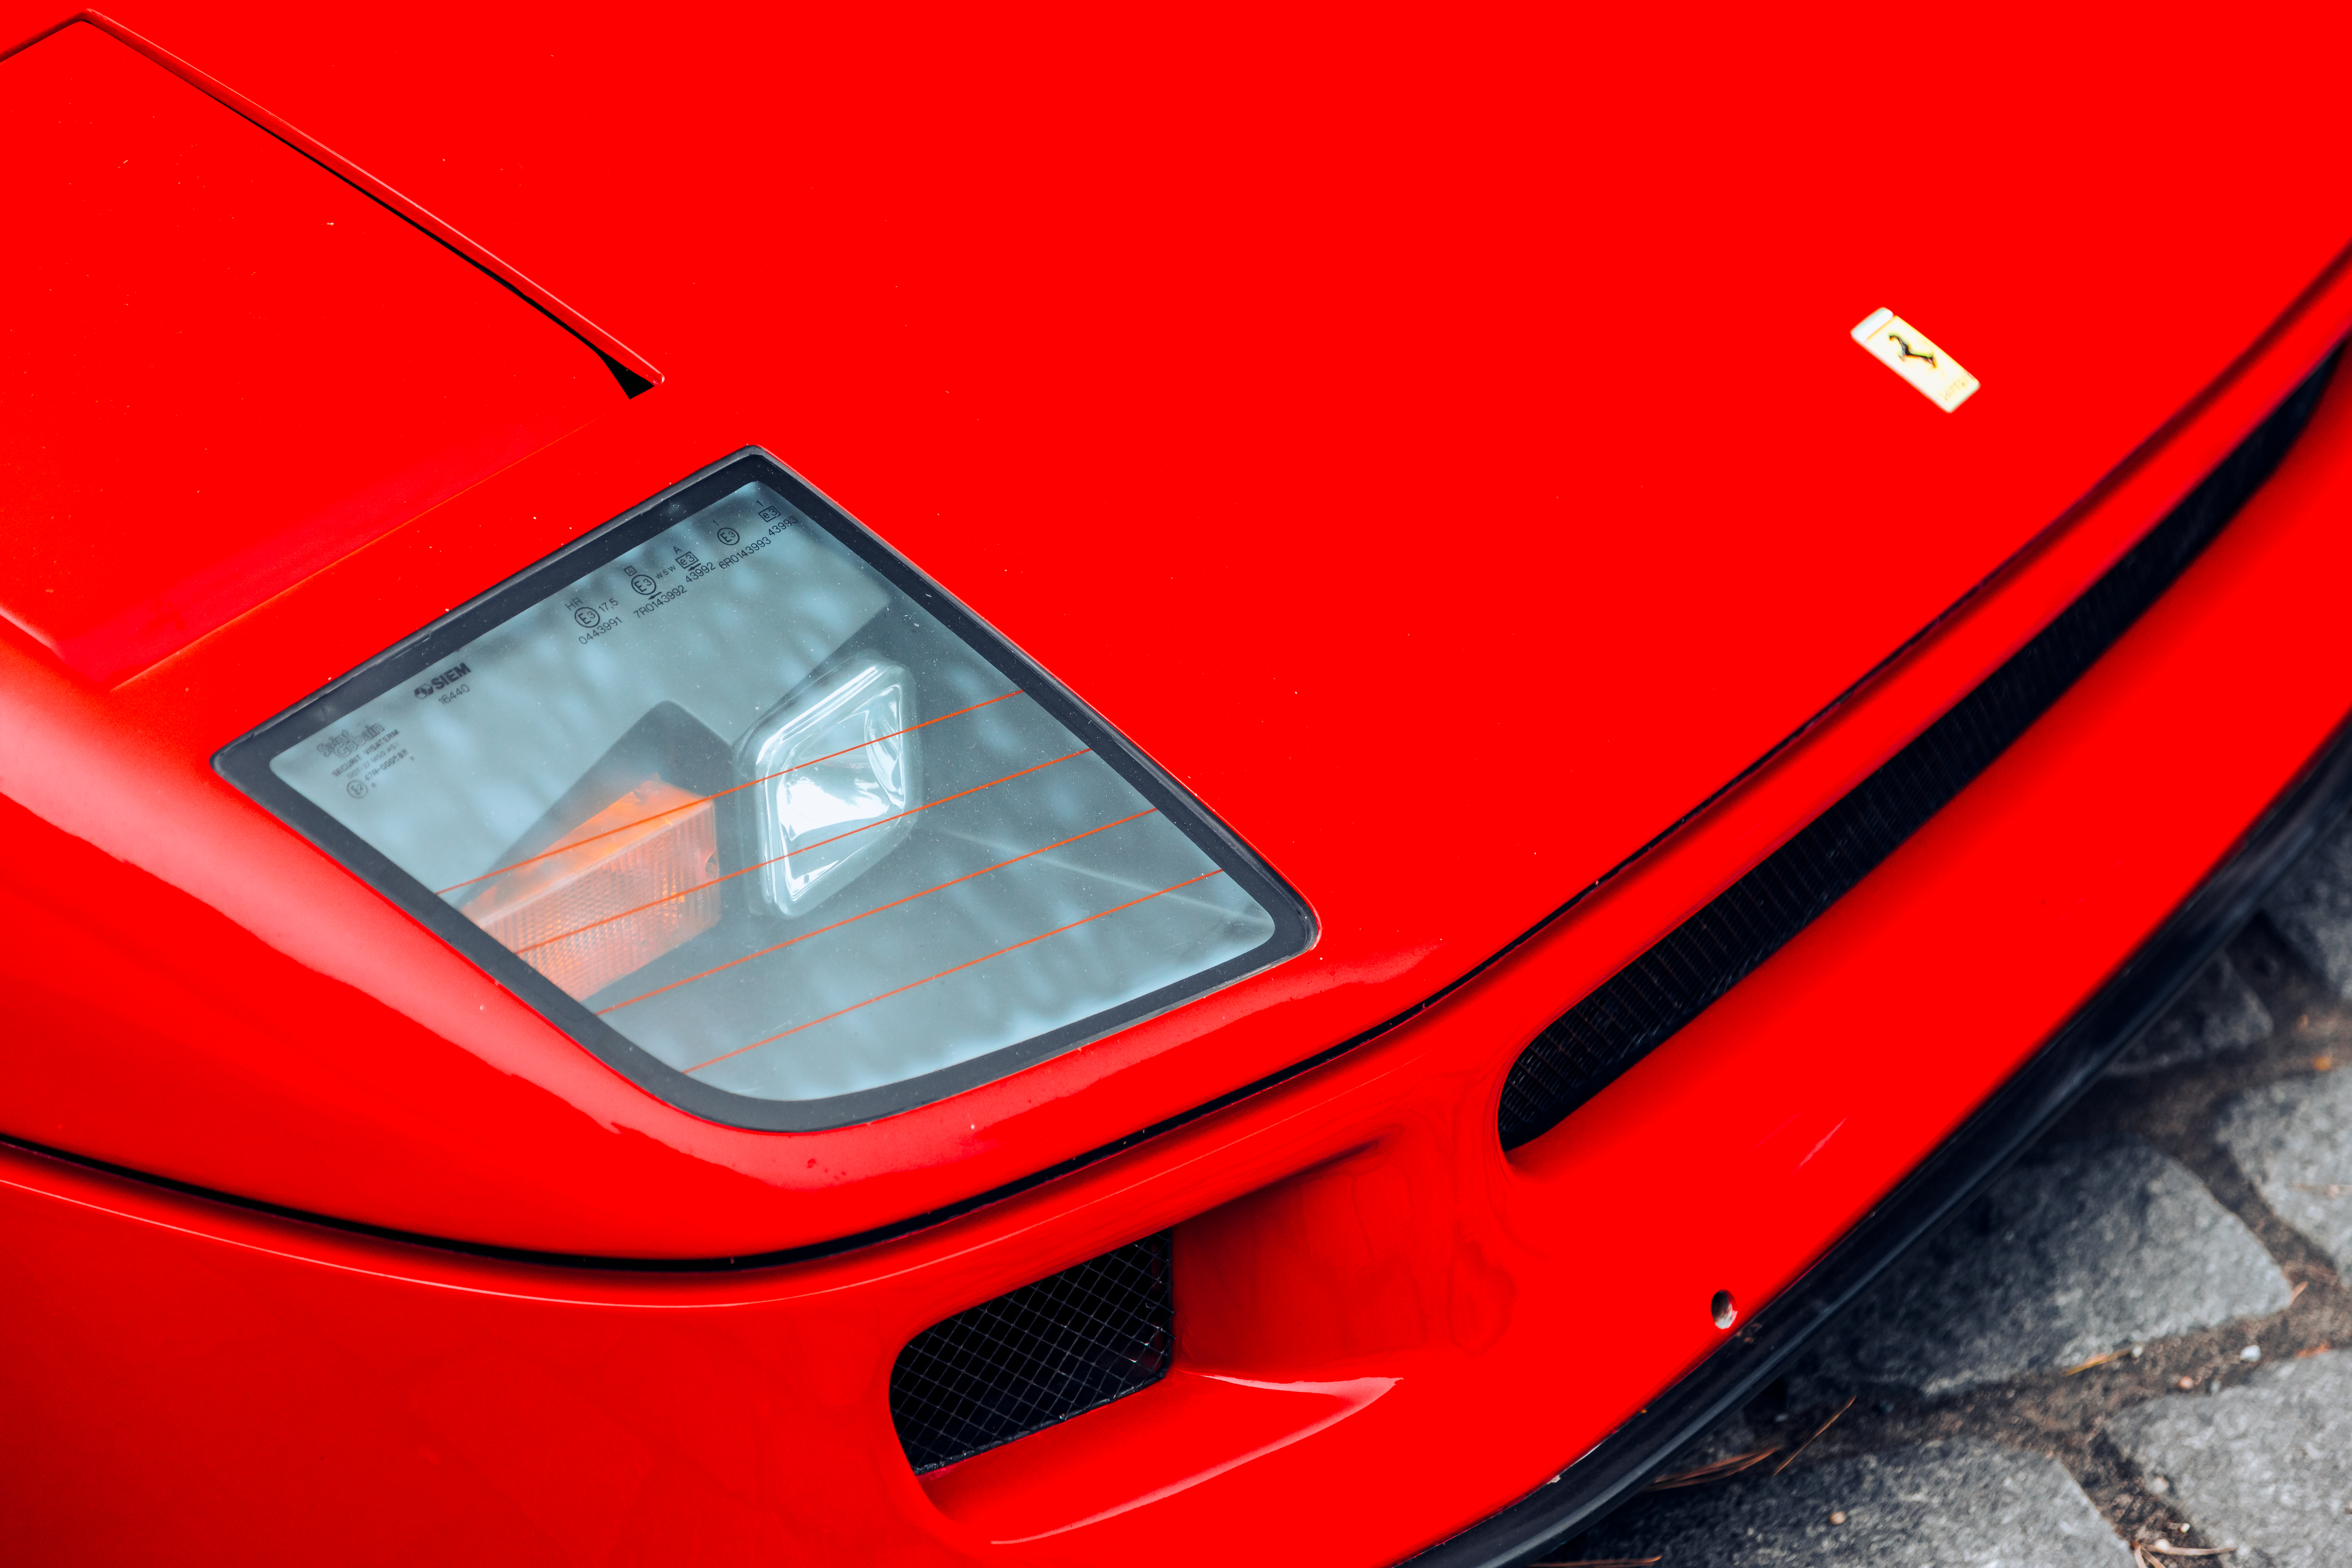 General 6720x4480 car Ferrari Ferrari F40 headlights red italian cars Stellantis mid-engine